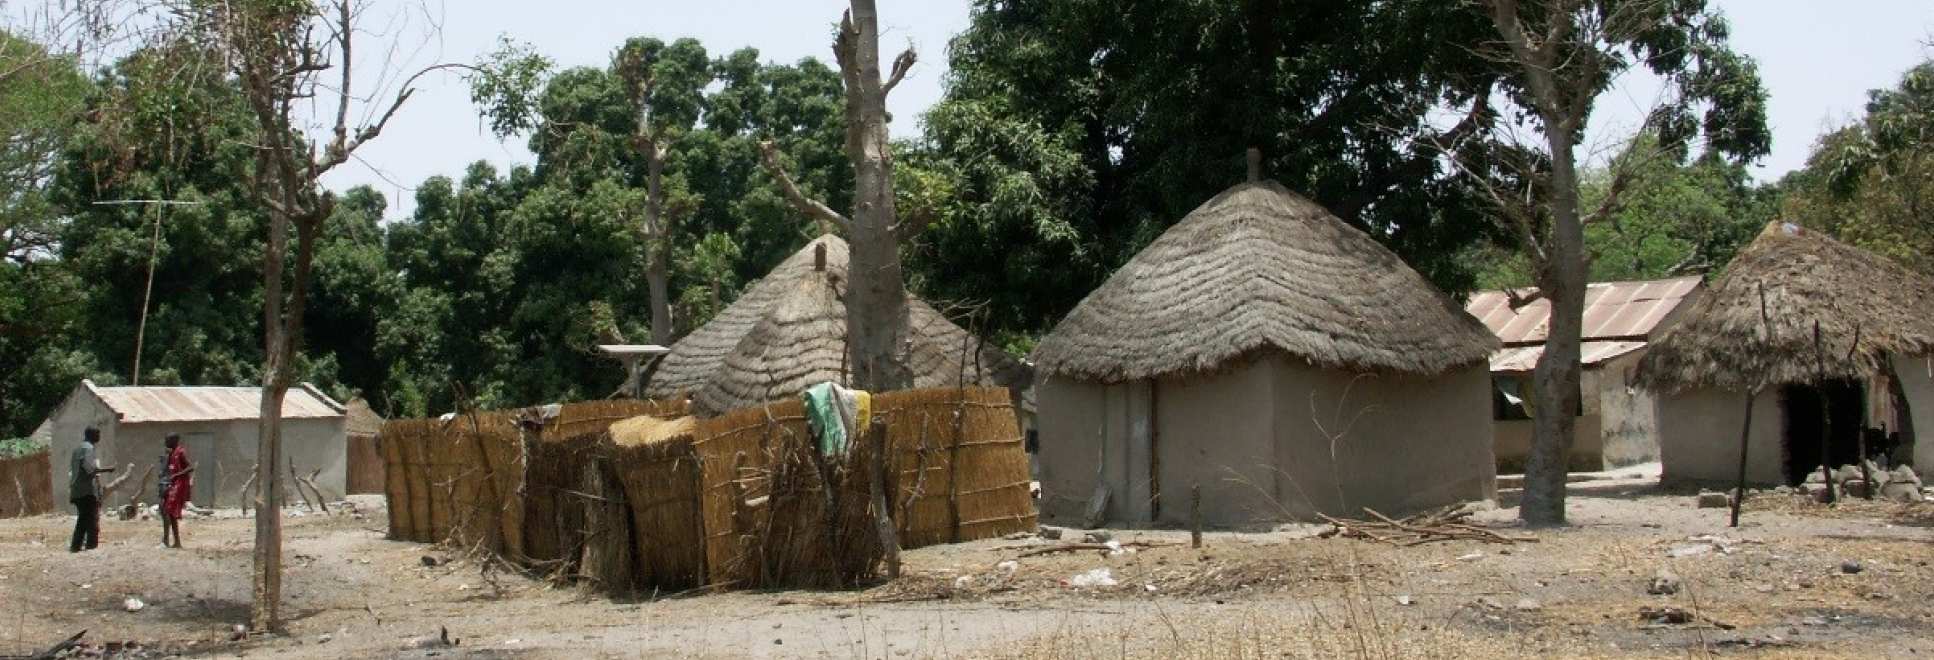 A village in rural Africa